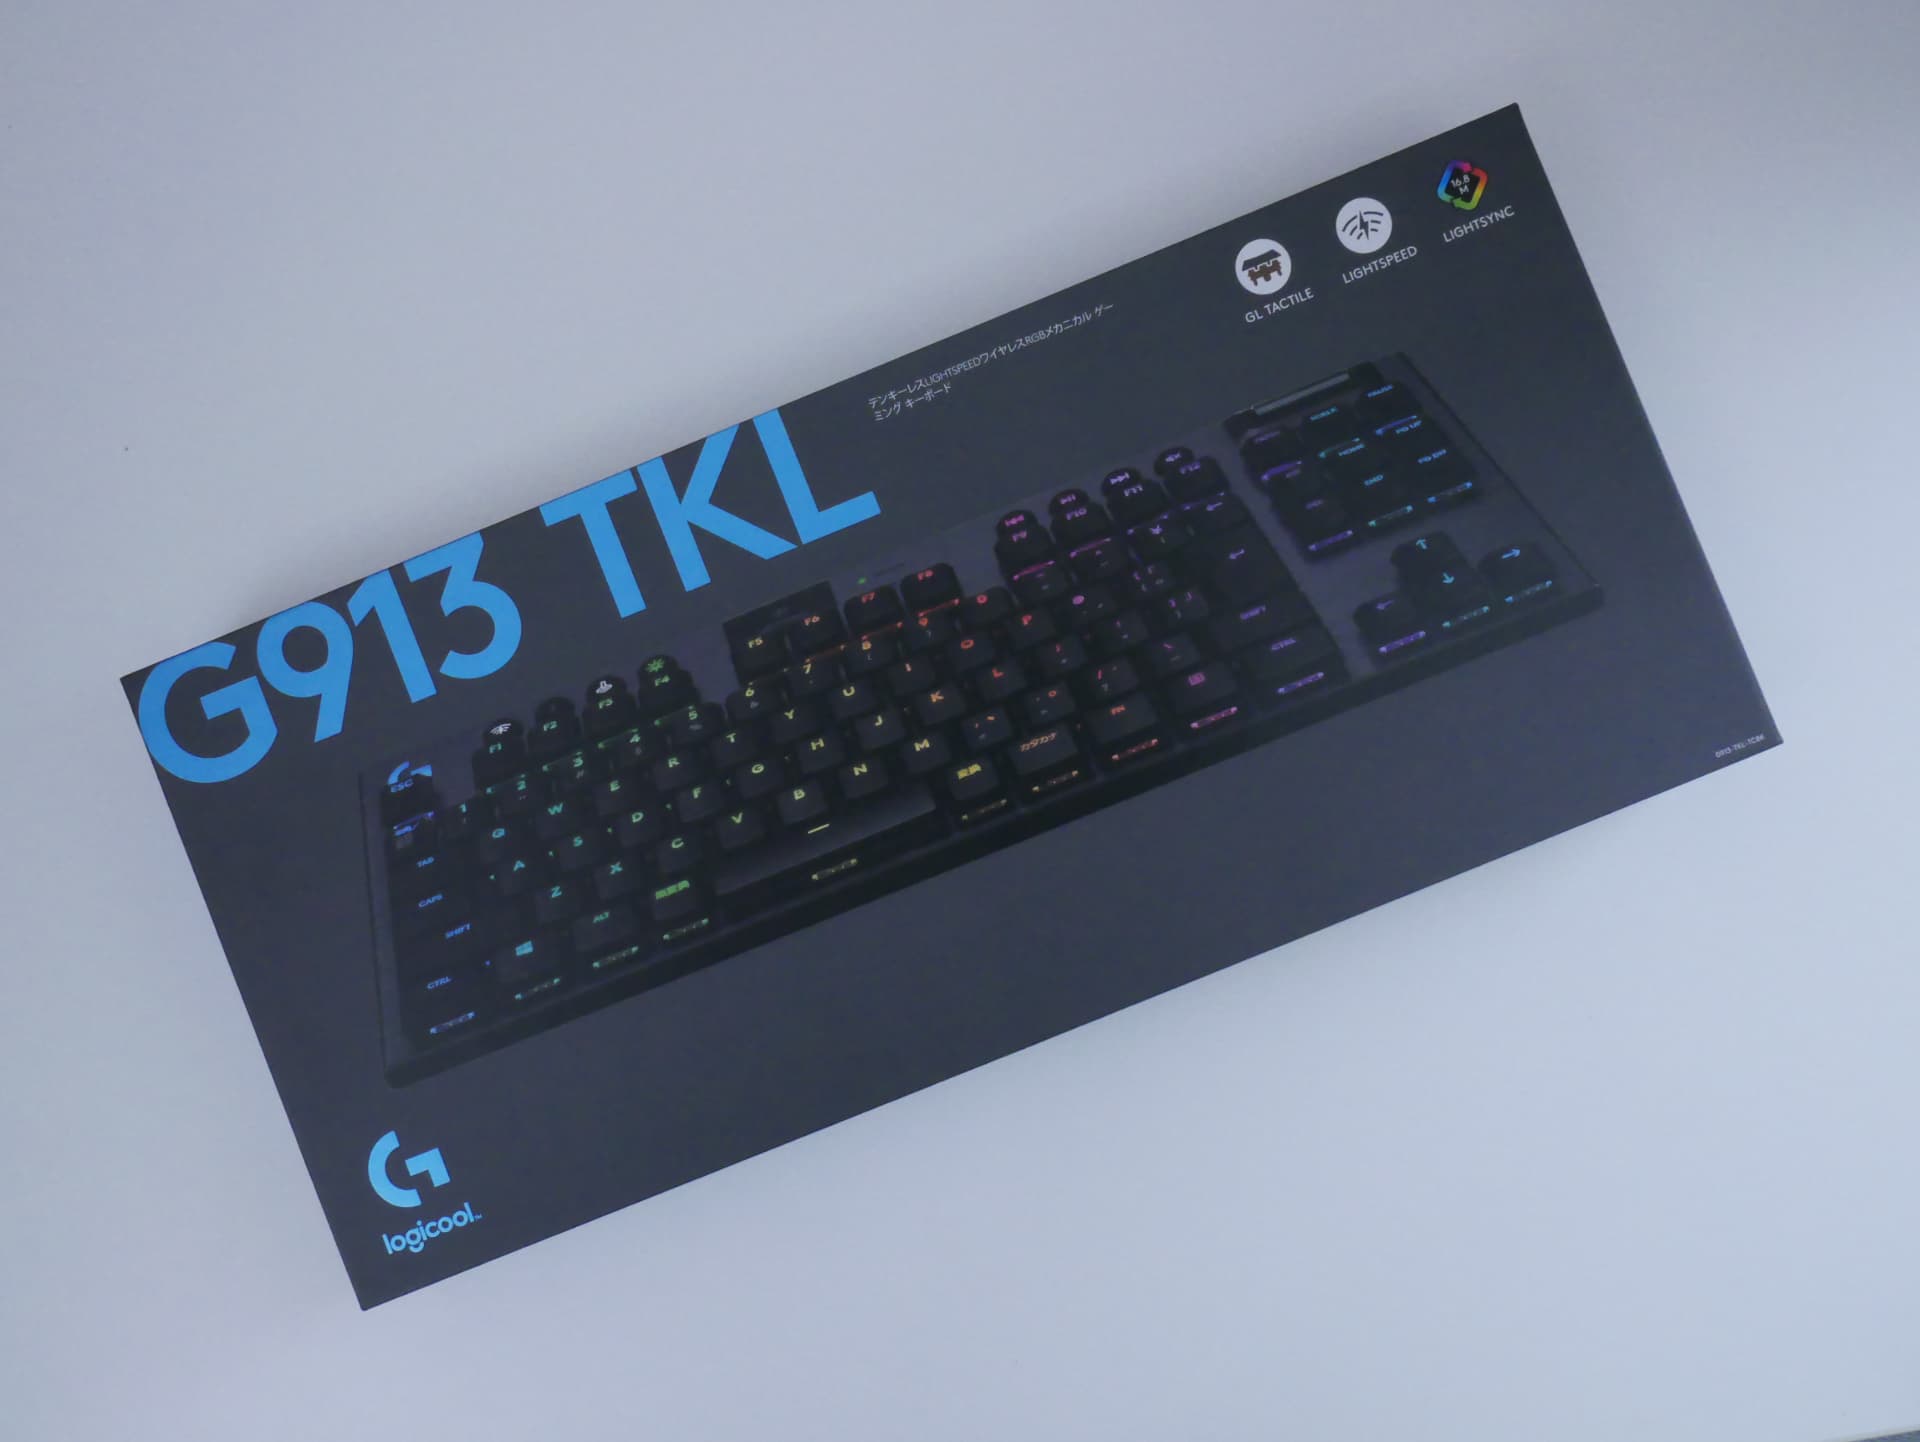 「Logicool G913 TKL」レビュー。ハイエンド志向な方は要チェックの無線テンキーレスキーボード | DPQP